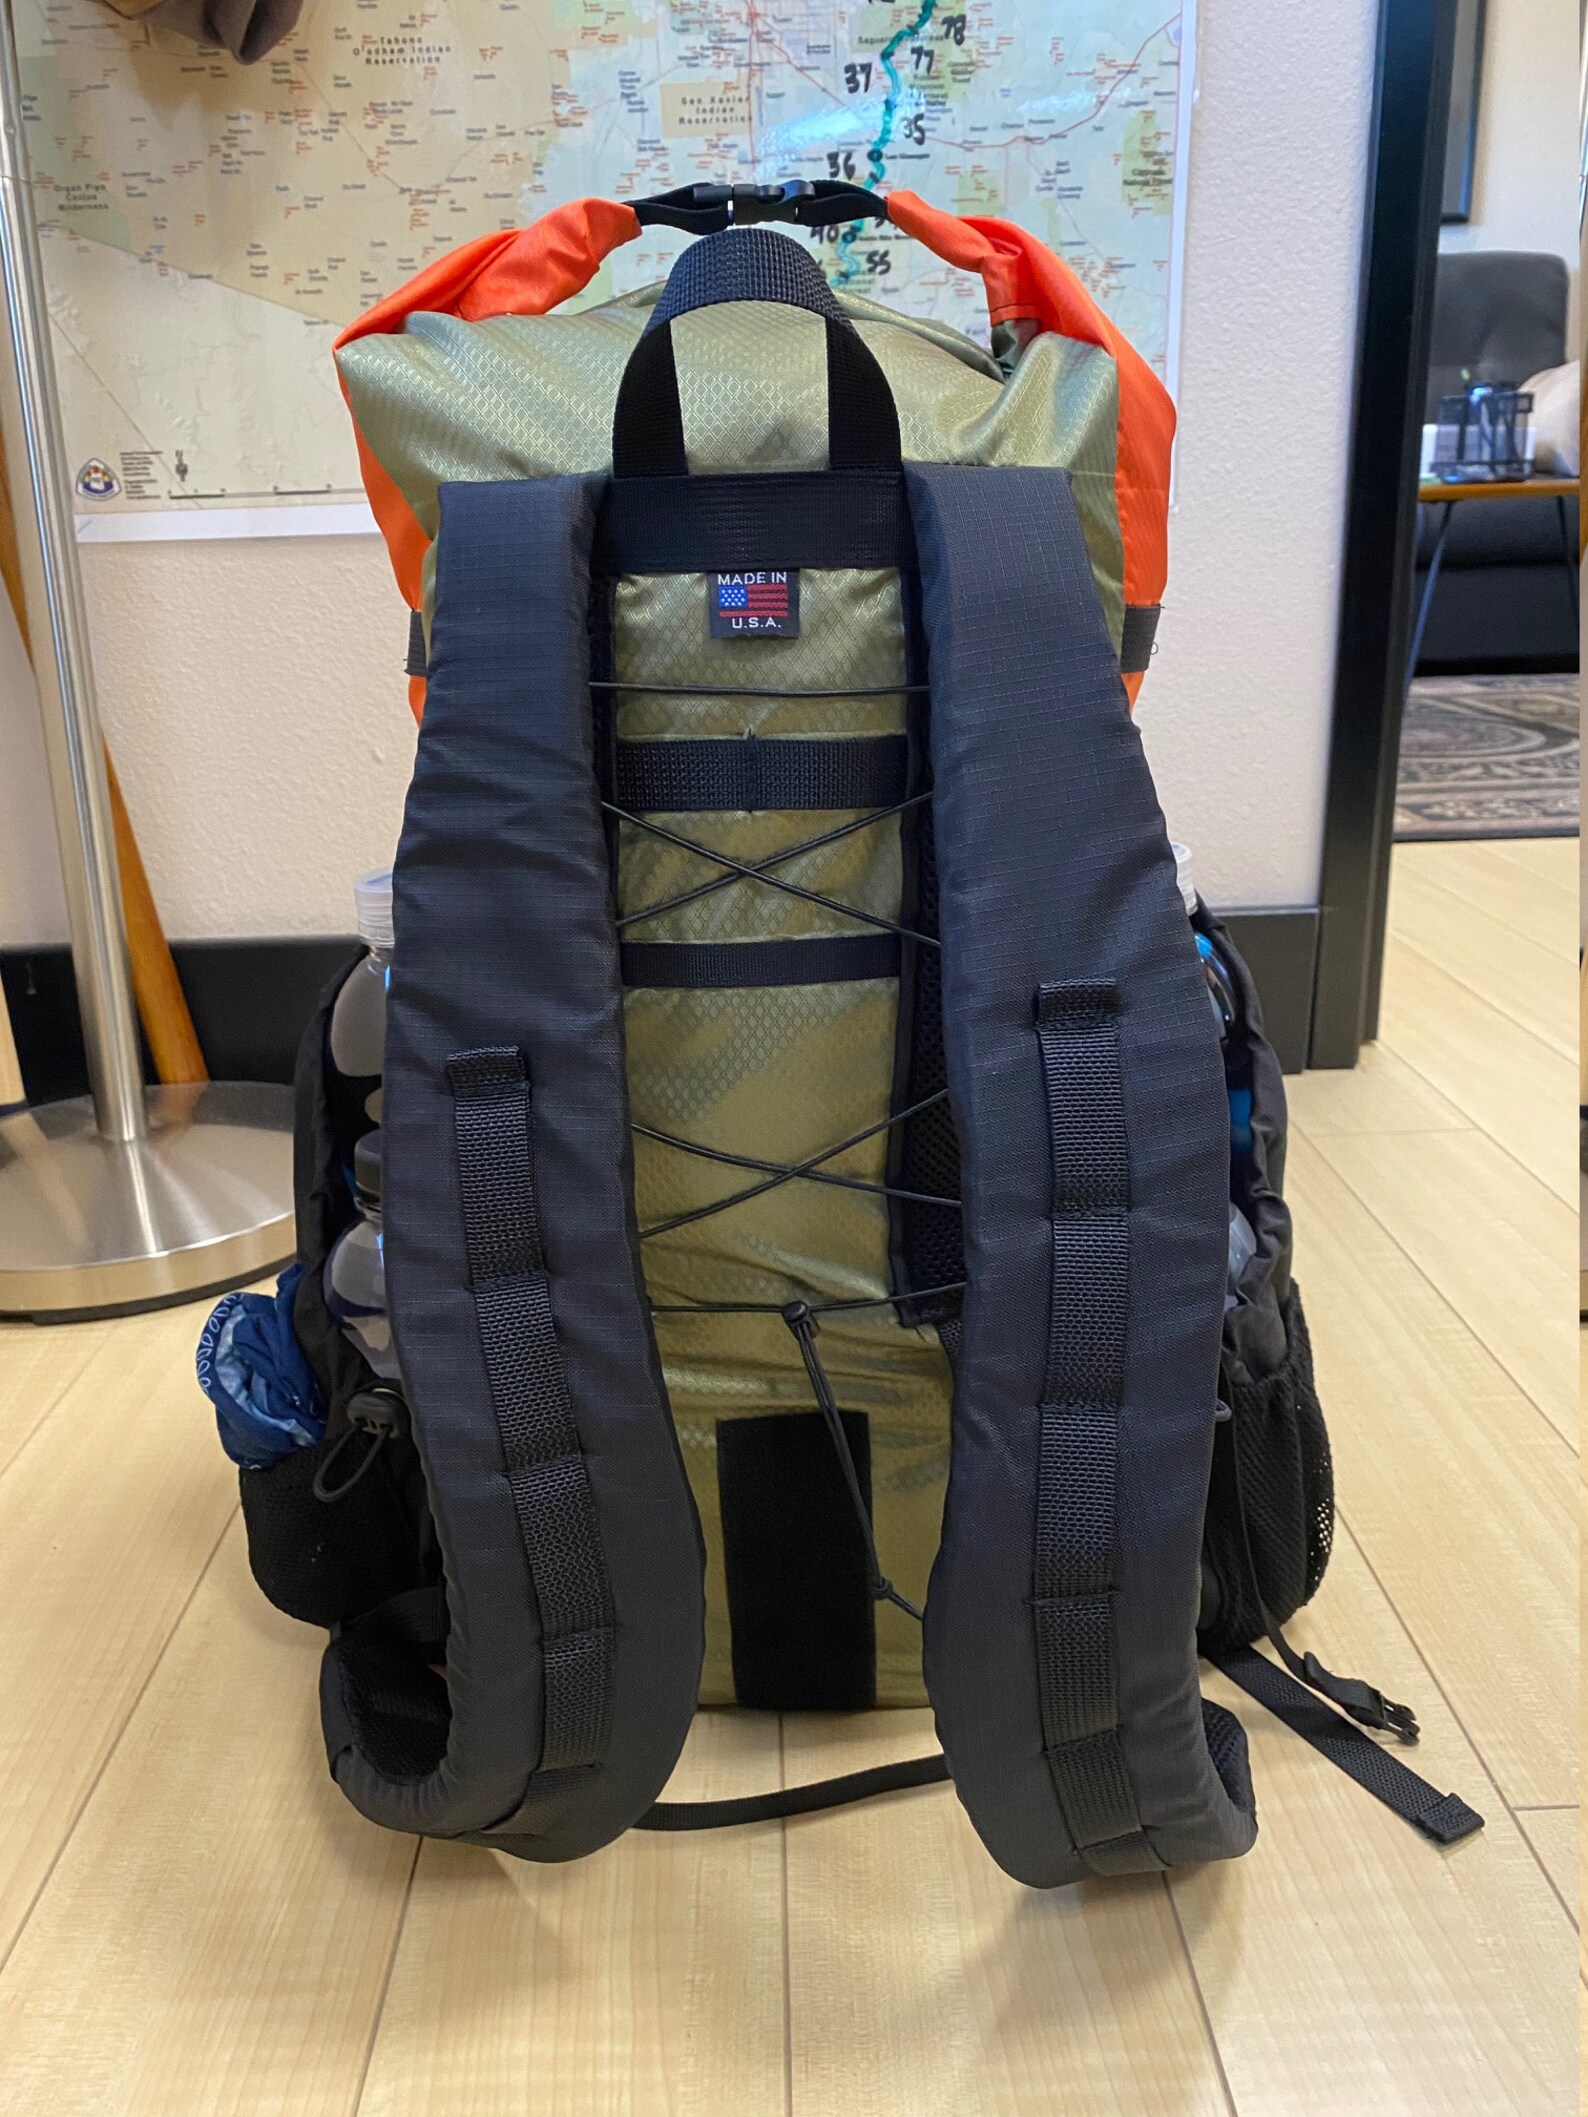 PBD TRAILPACK27 frameless hiking Ultralight Backpack | Etsy